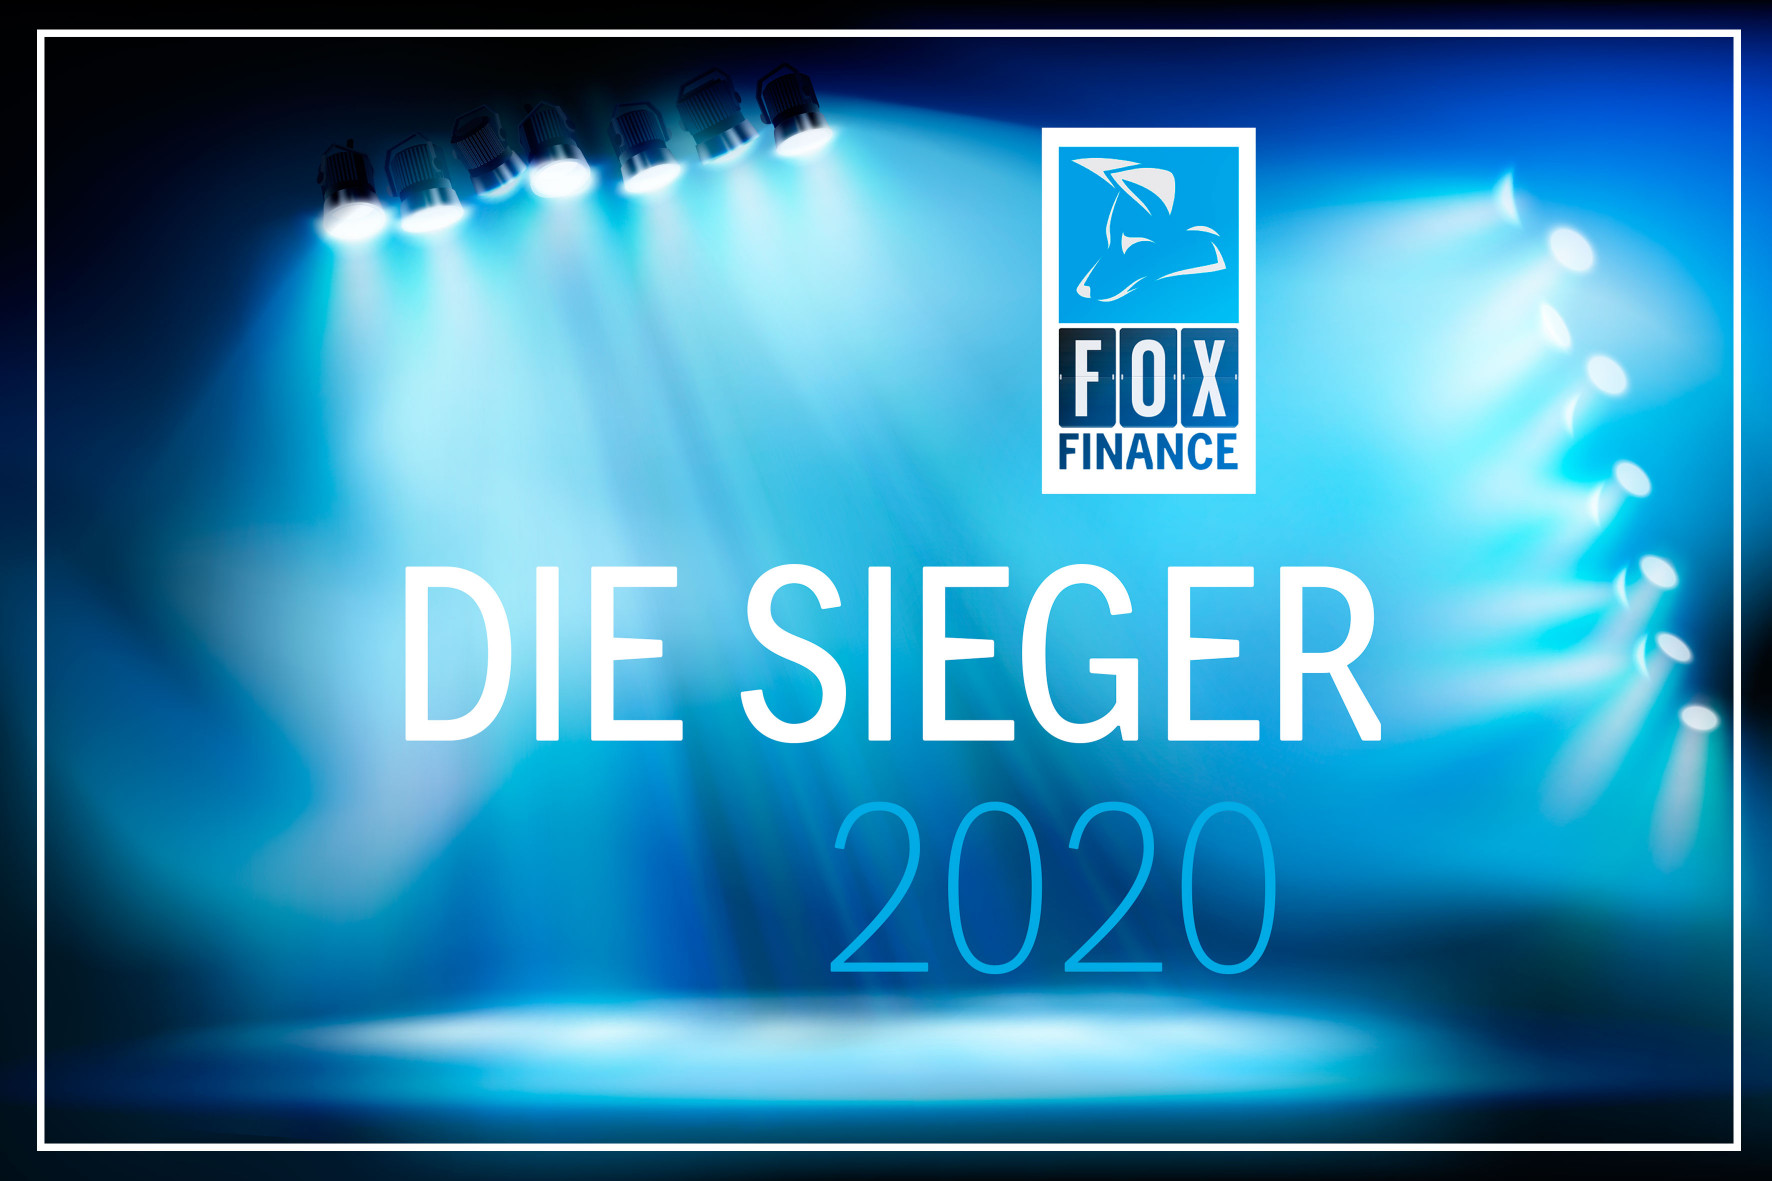 Der FOX FINANCE 2020 ist entschieden